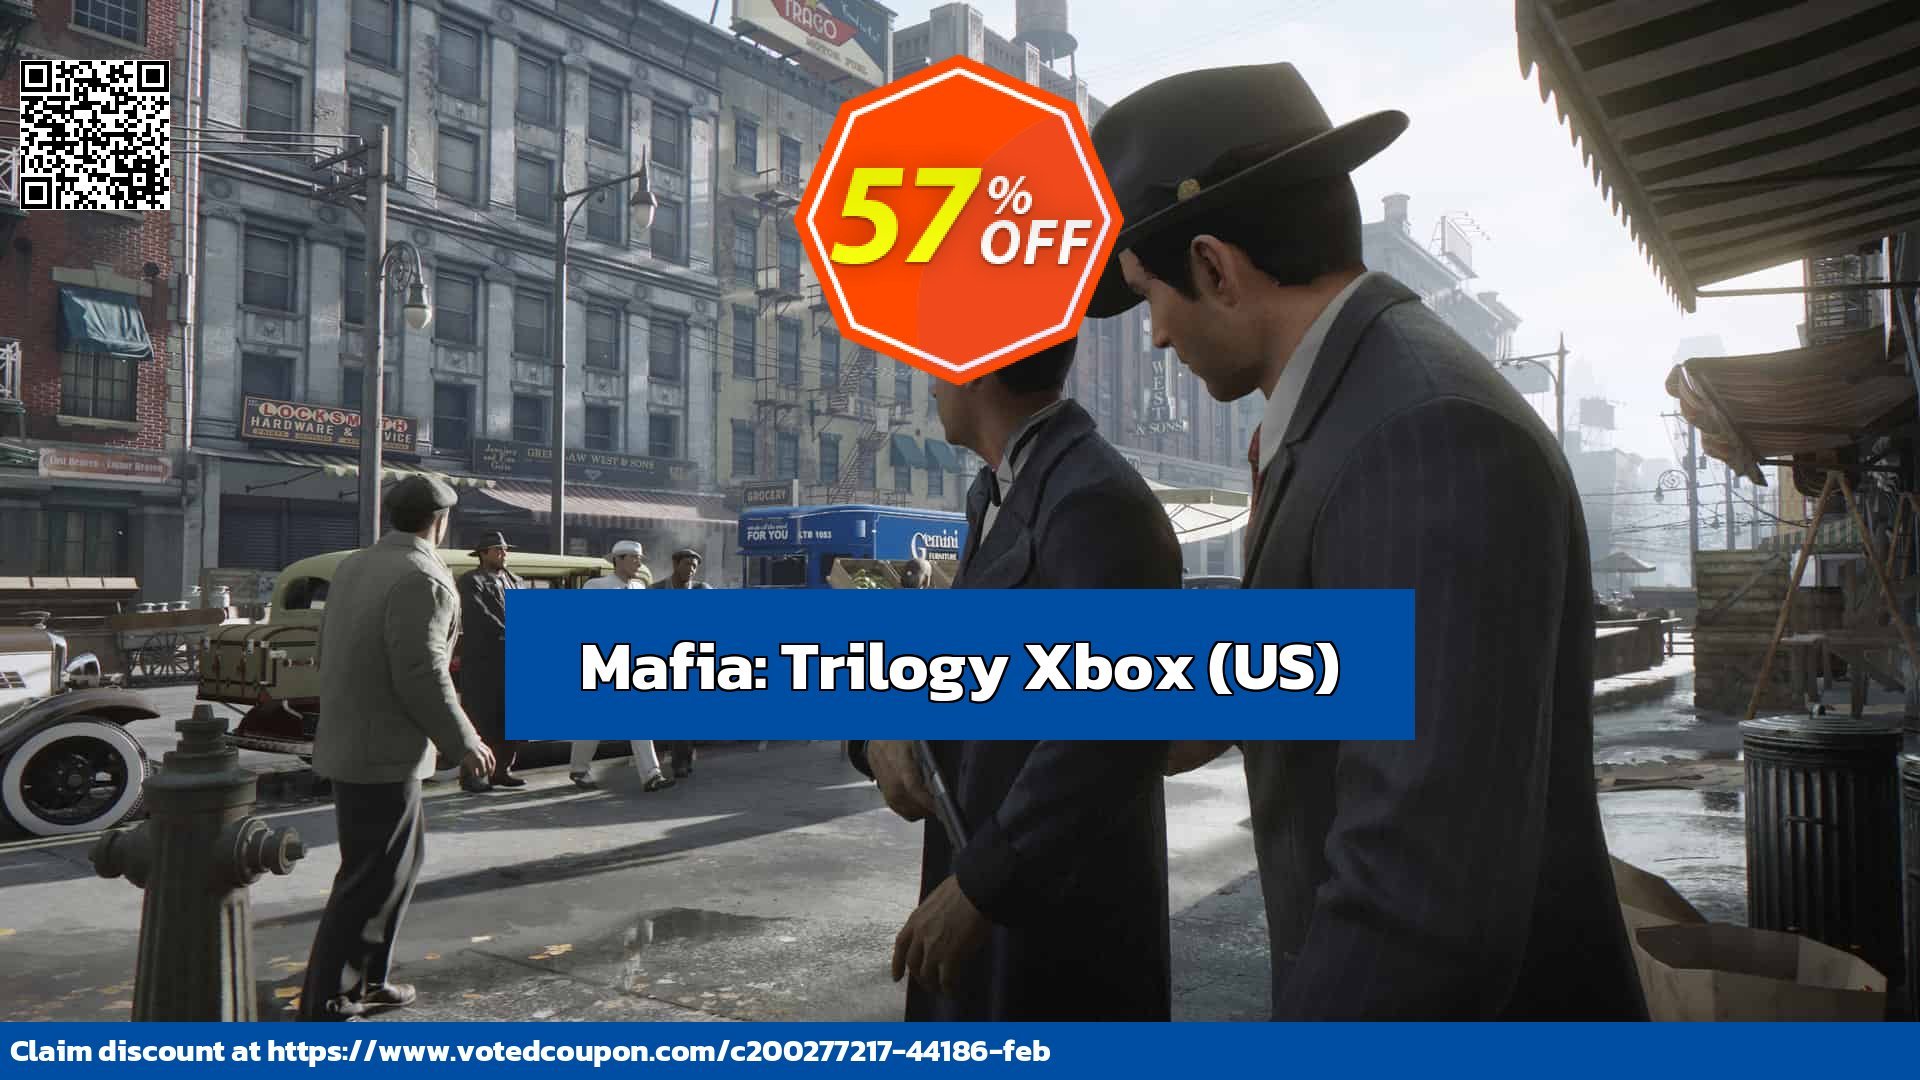 Mafia: Trilogy Xbox, US  voted-on promotion codes